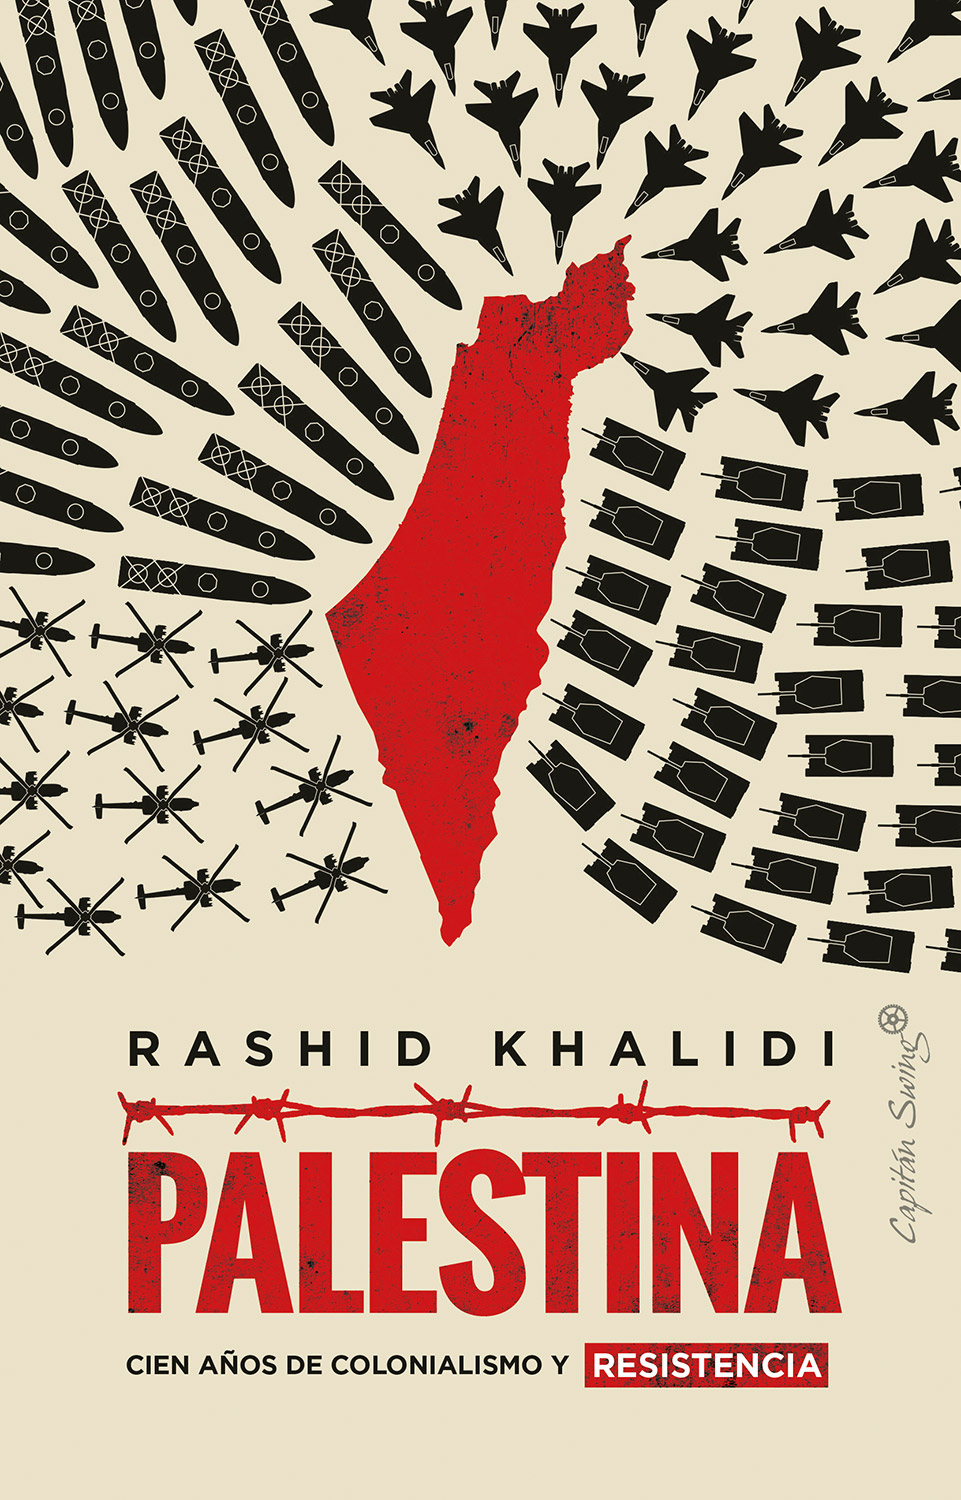 Rashid-Khalidi-Palestina